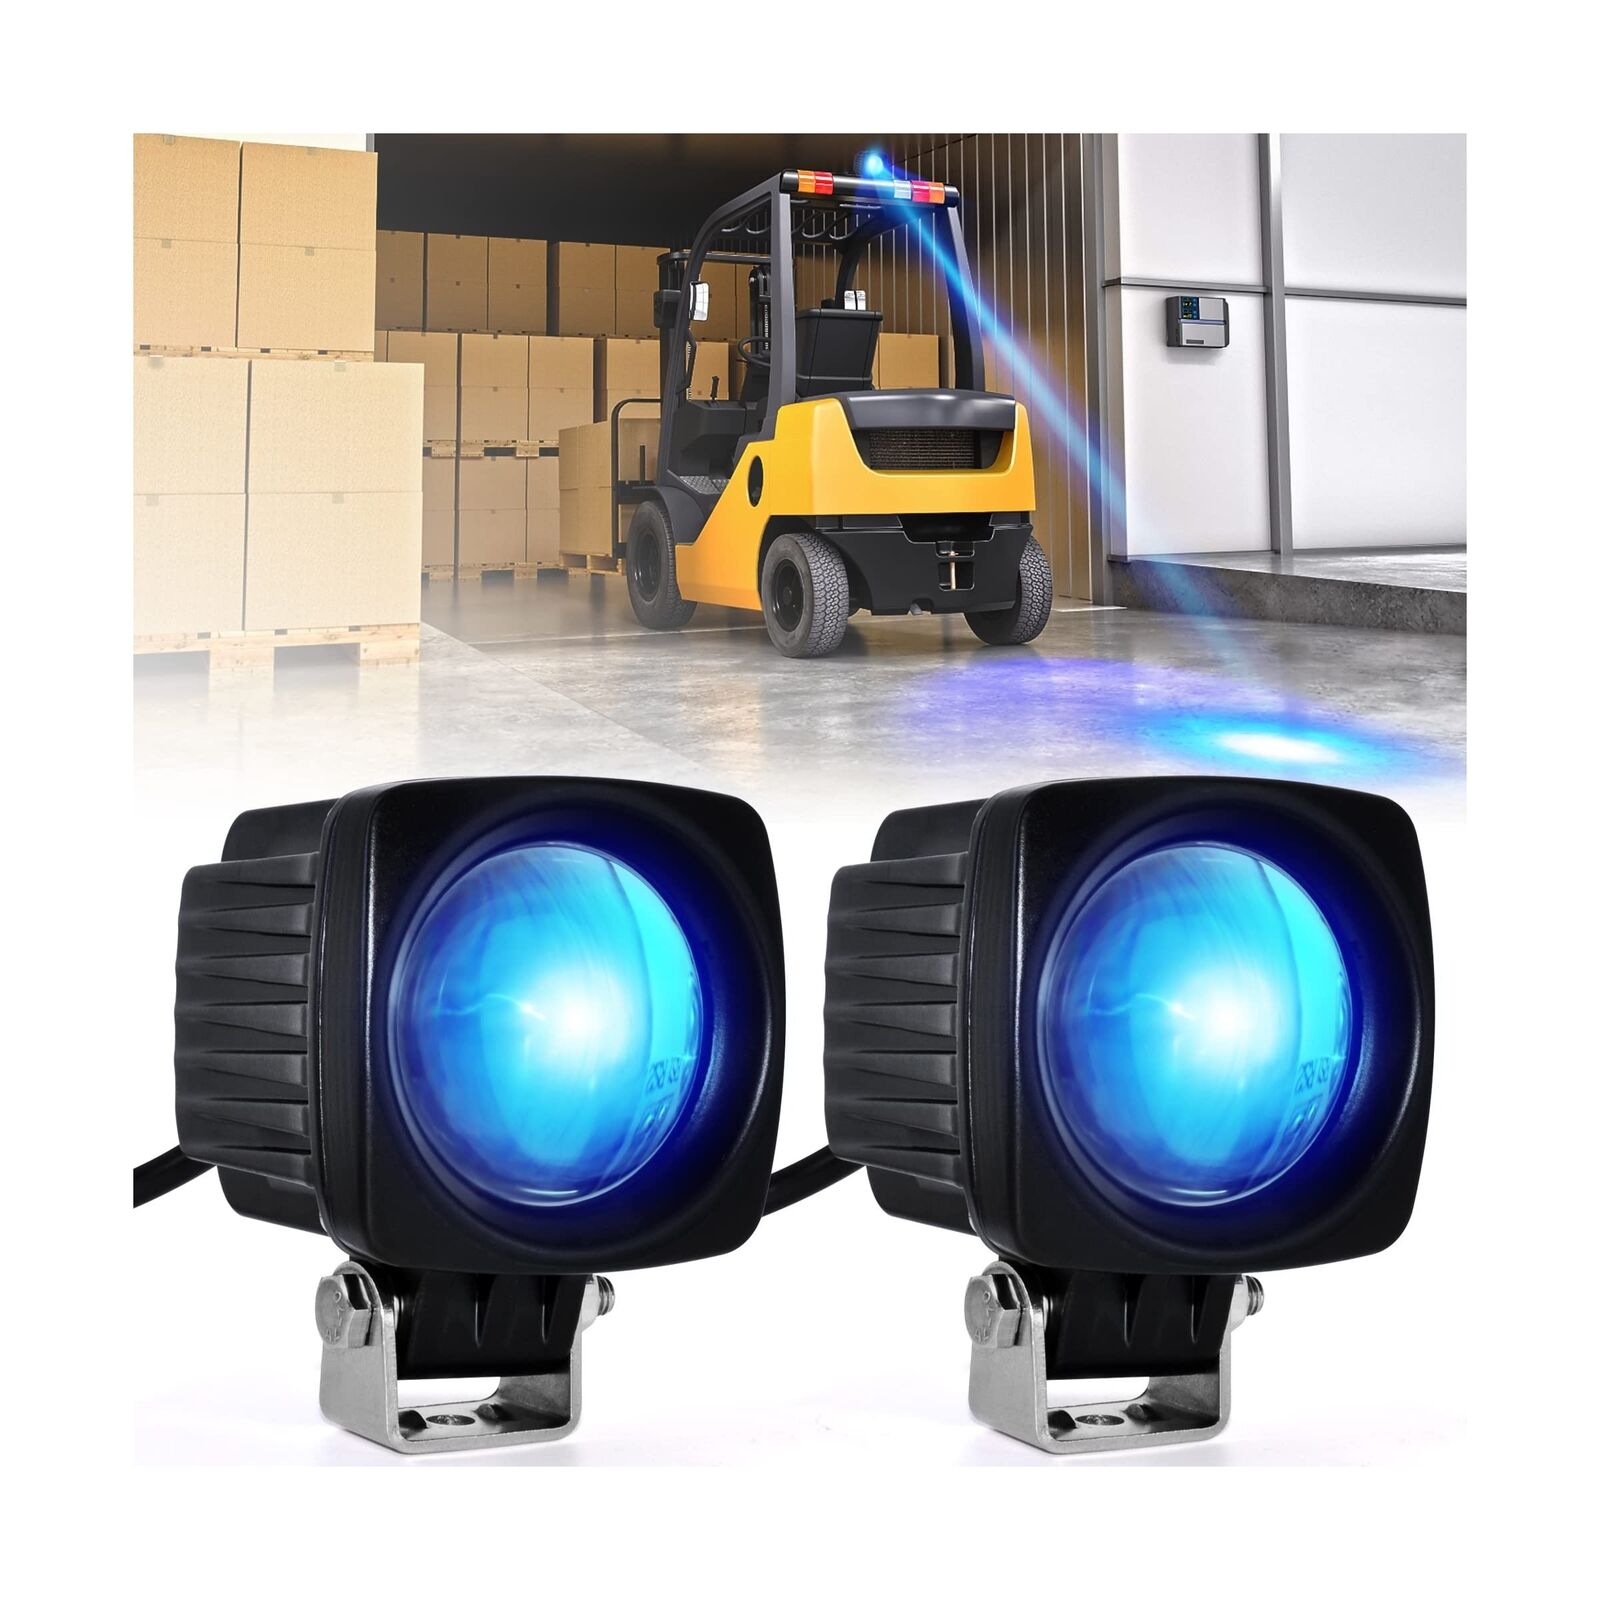 GCP Products (Upgrade Led Forklift Safety Lights Blue 2 Pack Forklift Backup Lights...